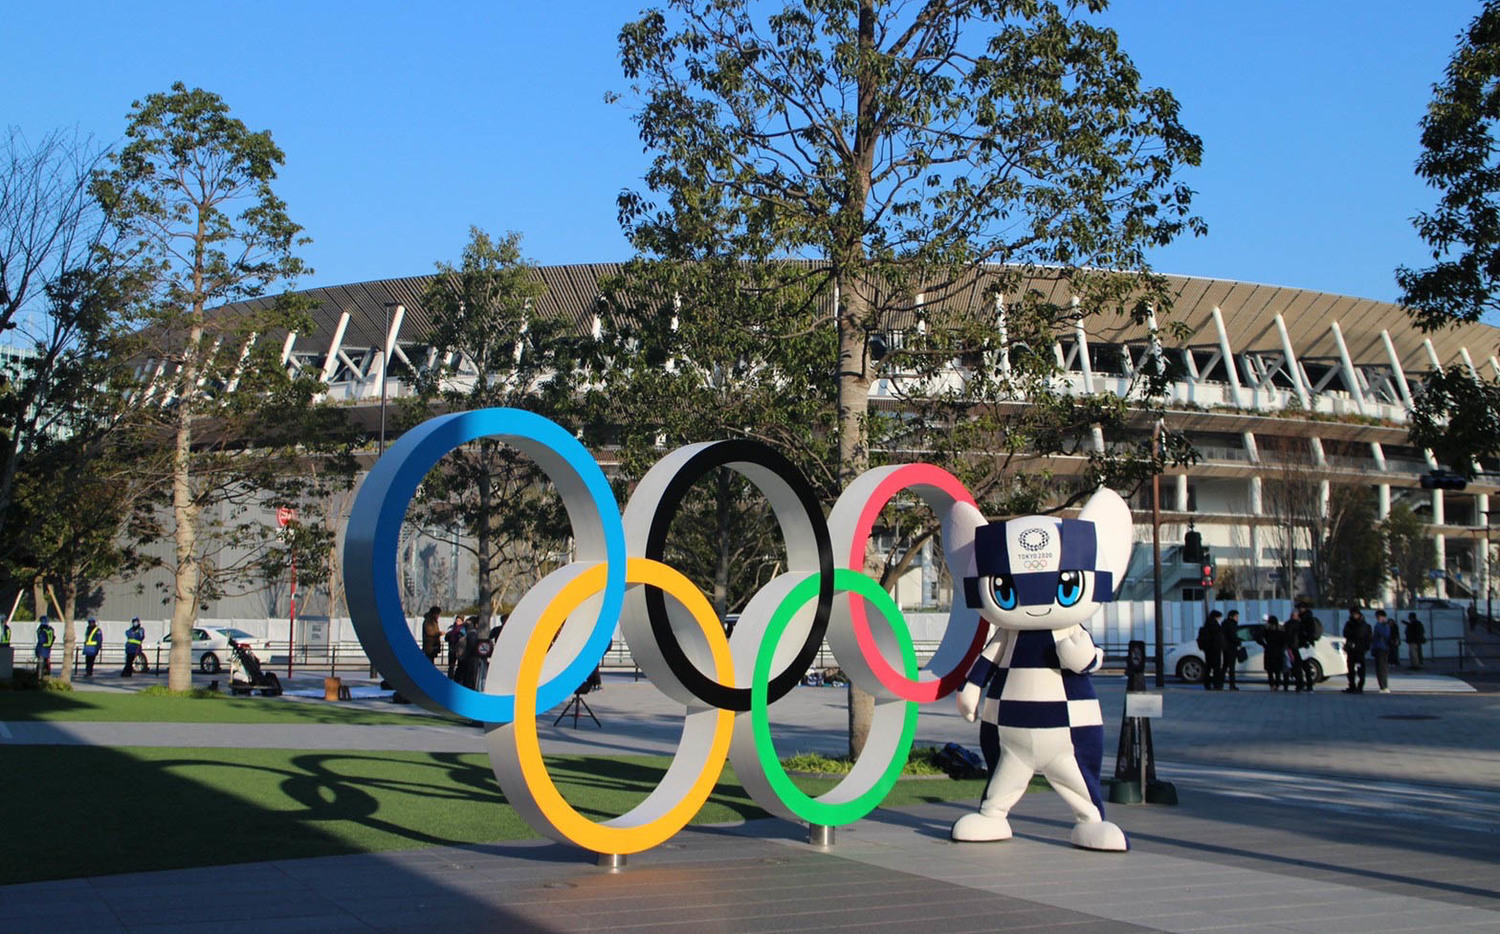 東京奧運舉辦與否 28國民調出爐「韓、日最反對」 | 國際 | 新頭殼